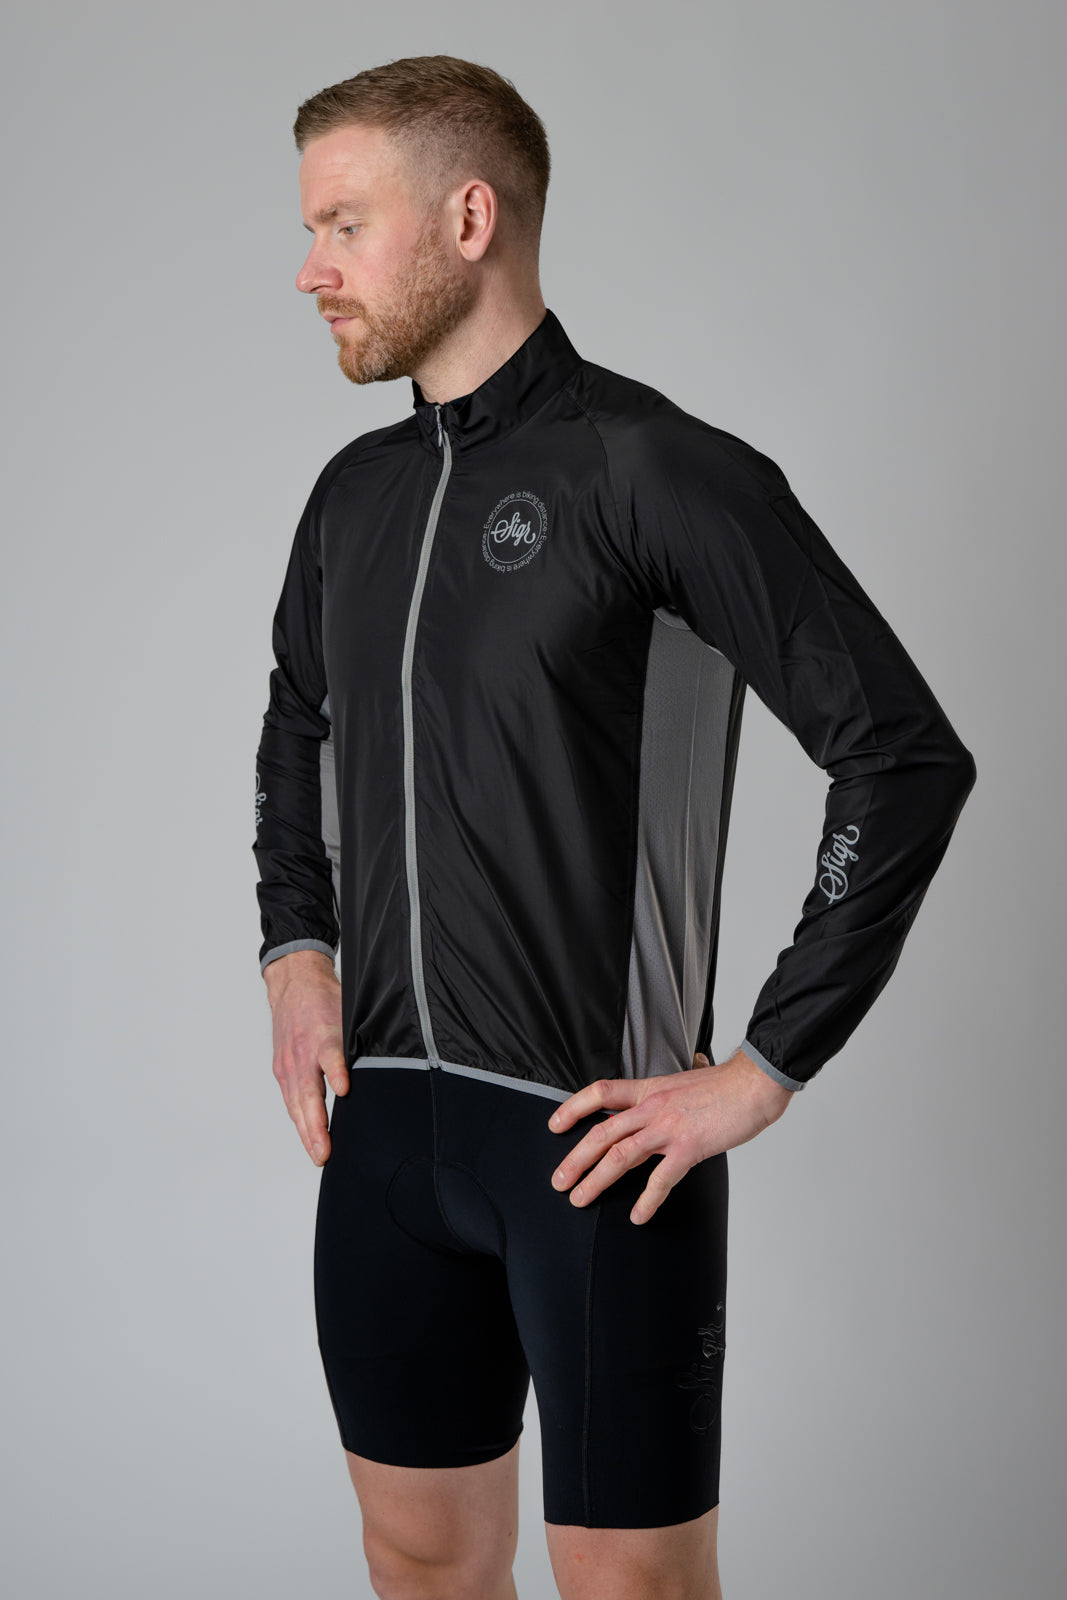 Sigr Uppsala Black - Cycling Wind Jacket for Men